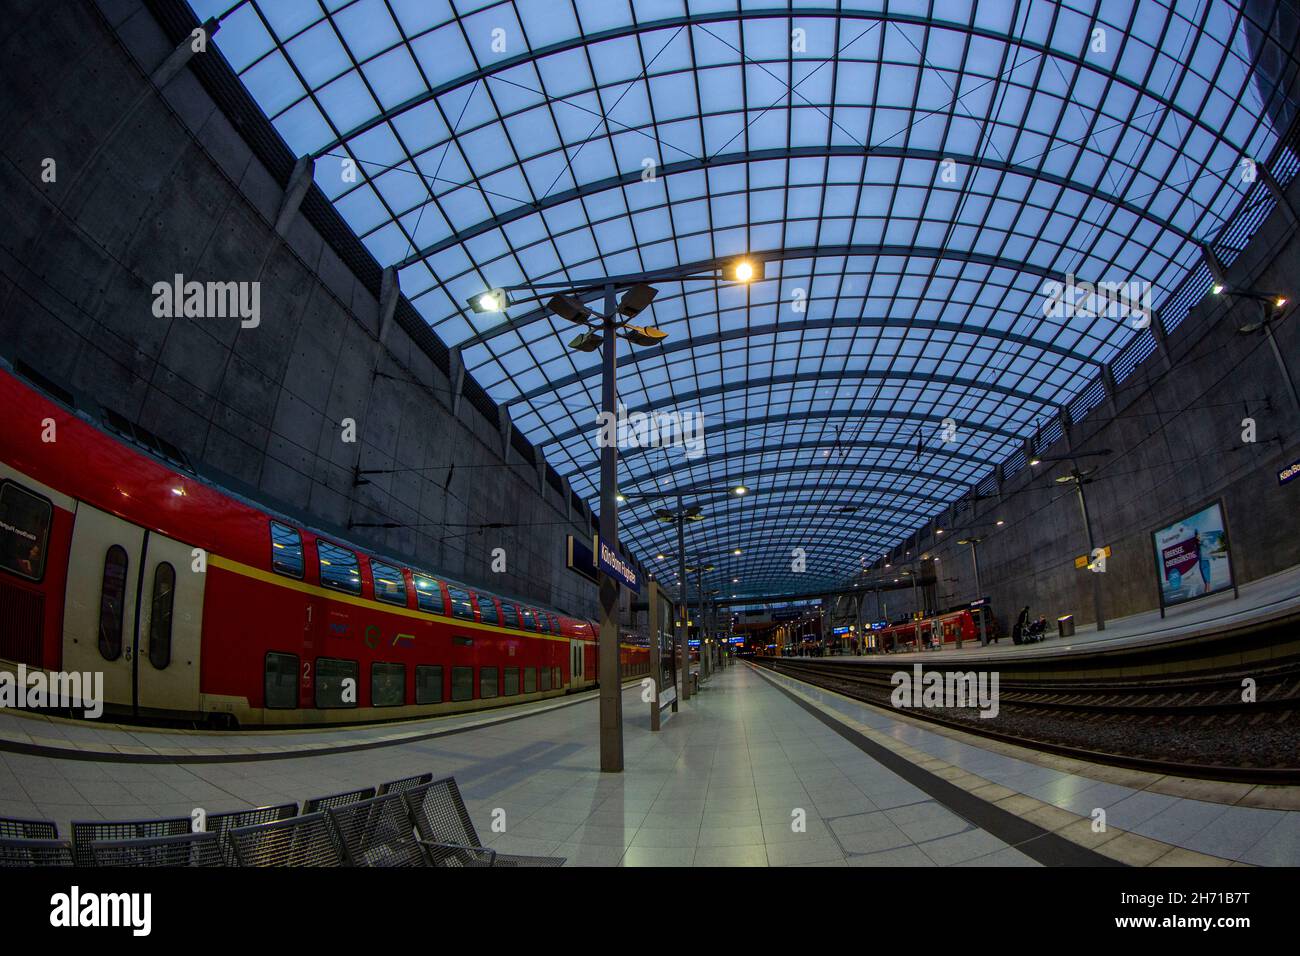 Stazione ferroviaria dell'aeroporto di Colonia Bonn (CGN) in Germania. Foto Stock